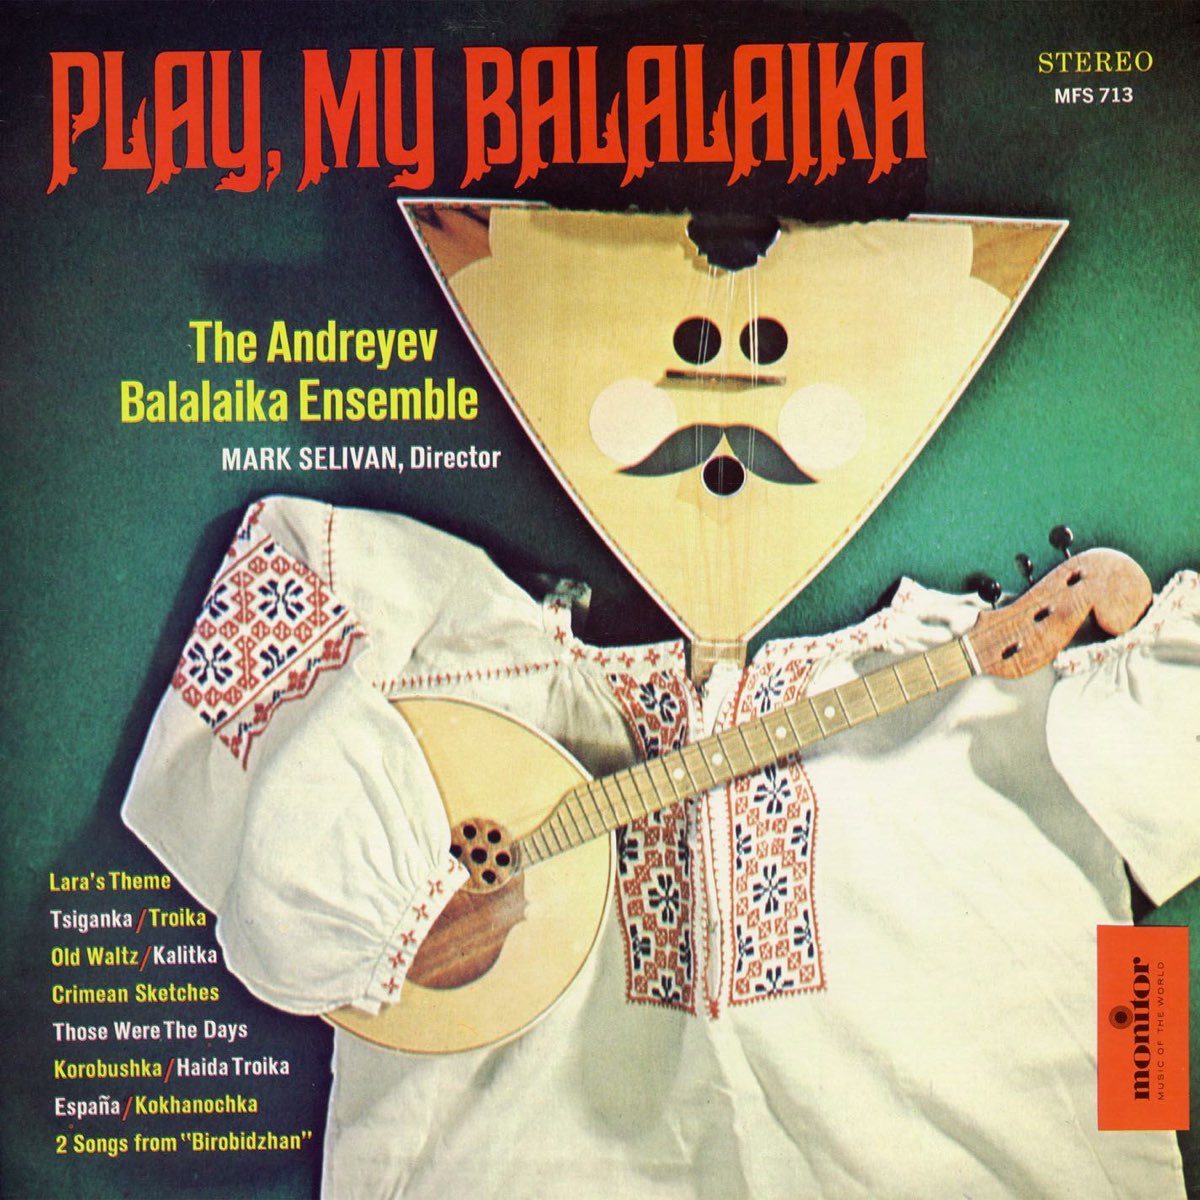 Музыка балалайка слушать. Балалайка. Balalaika CD. Исполнитель балалайка альбом. Balalaika CD collection.